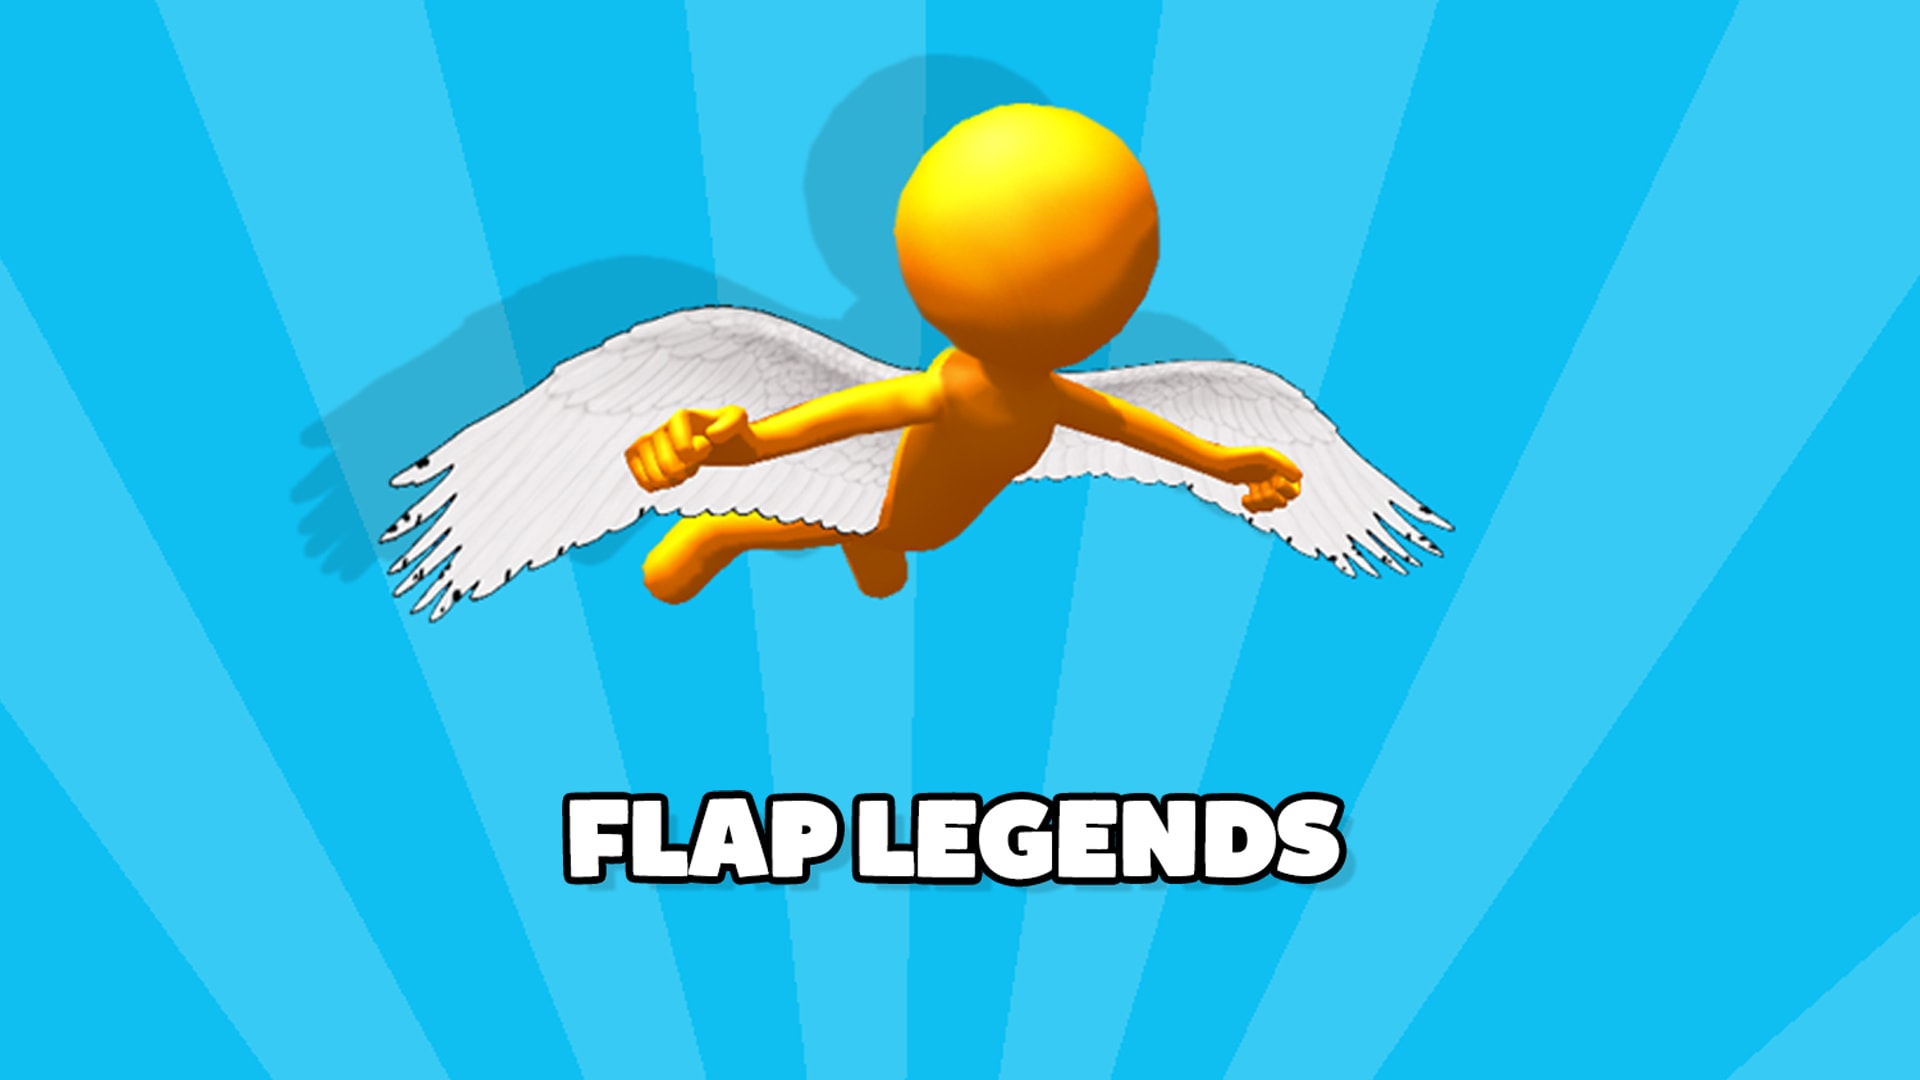 Flap Legends